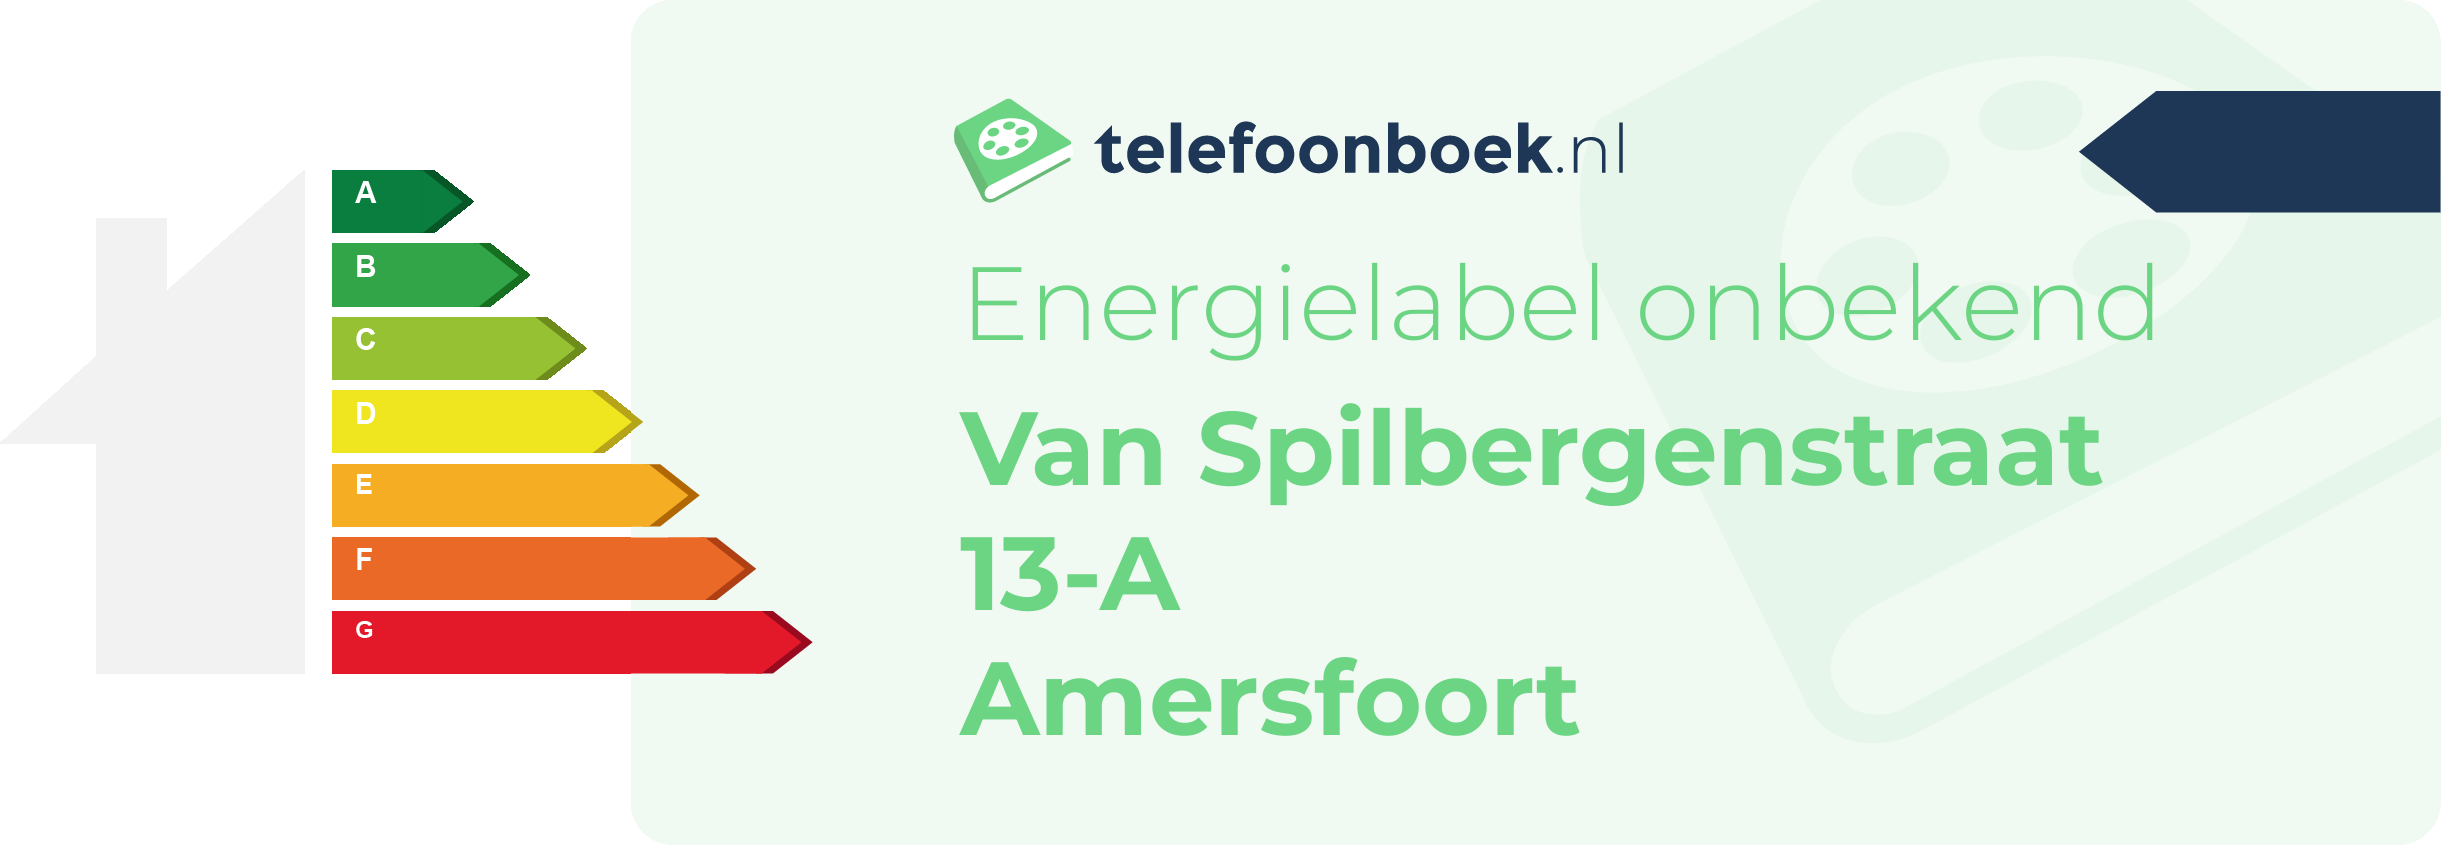 Energielabel Van Spilbergenstraat 13-A Amersfoort